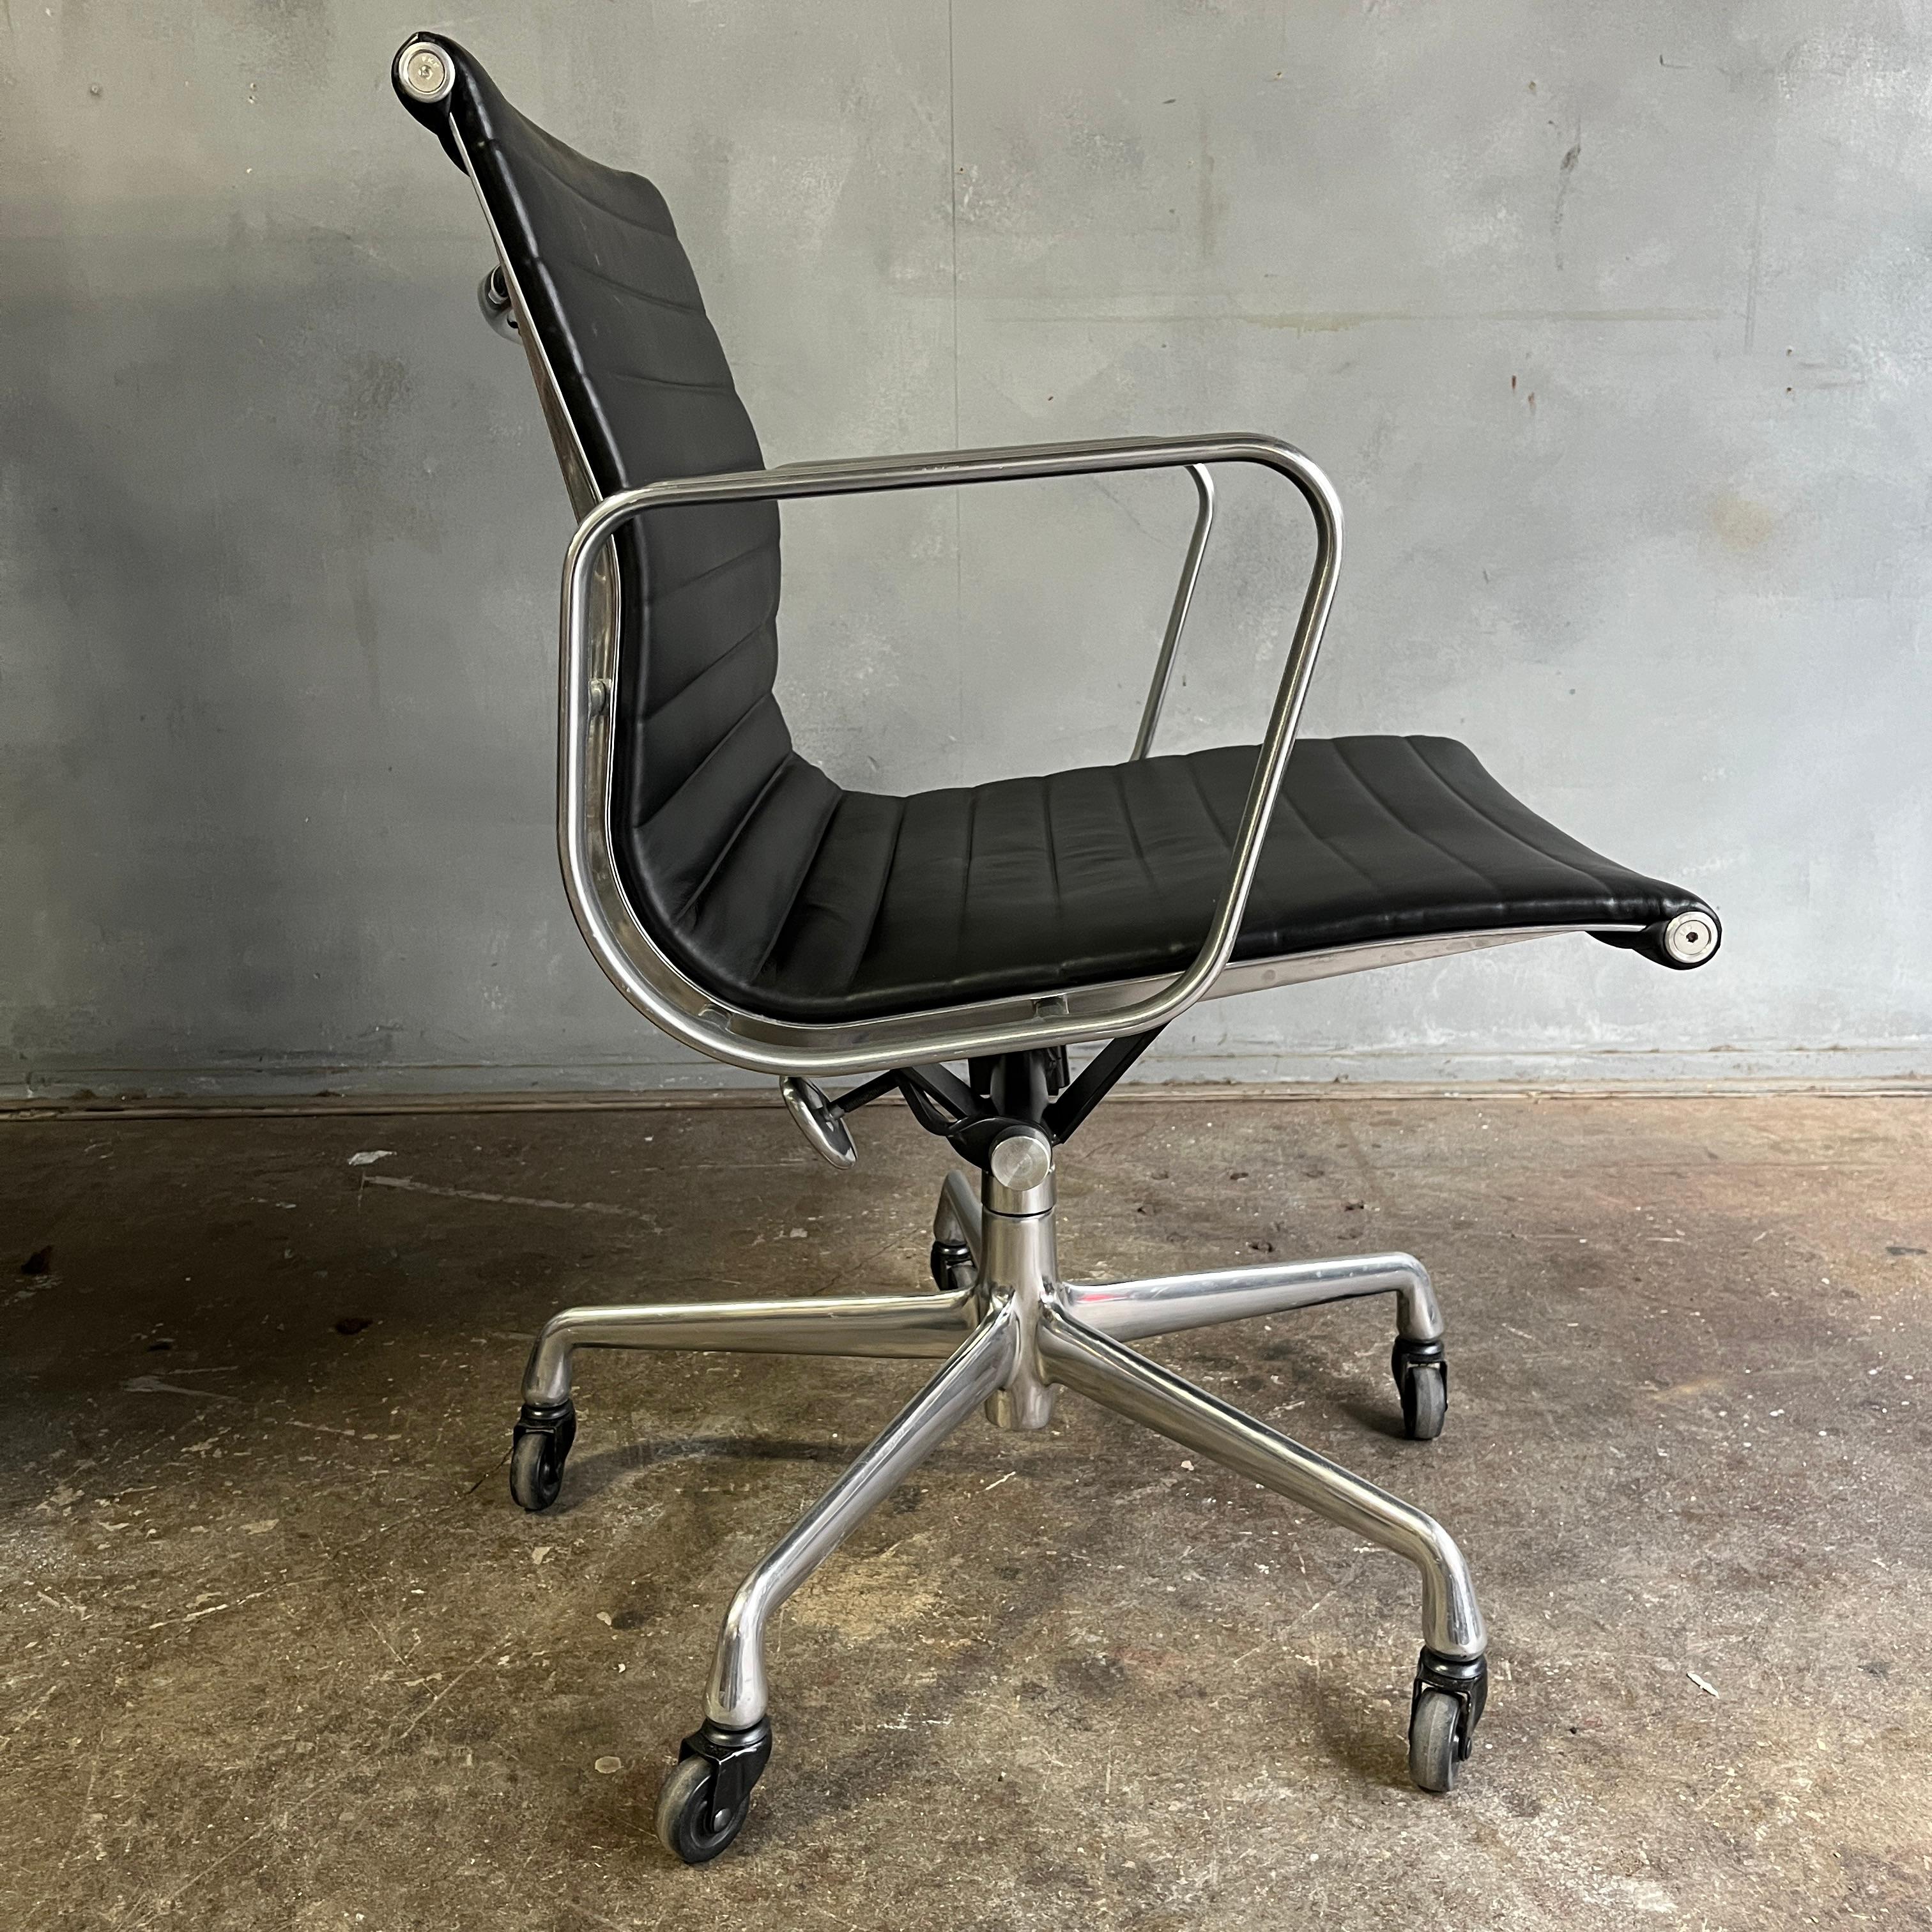 Zu Ihrer Verfügung stehen bis zu 18 Gruppenstühle aus Aluminium mit schwarzem Leder, entworfen von Eames für Herman Miller. Alle in sehr gutem Originalzustand mit minimalen Gebrauchsspuren. Mit manueller Neigungs- und Höhenverstellung. 

Armhöhe